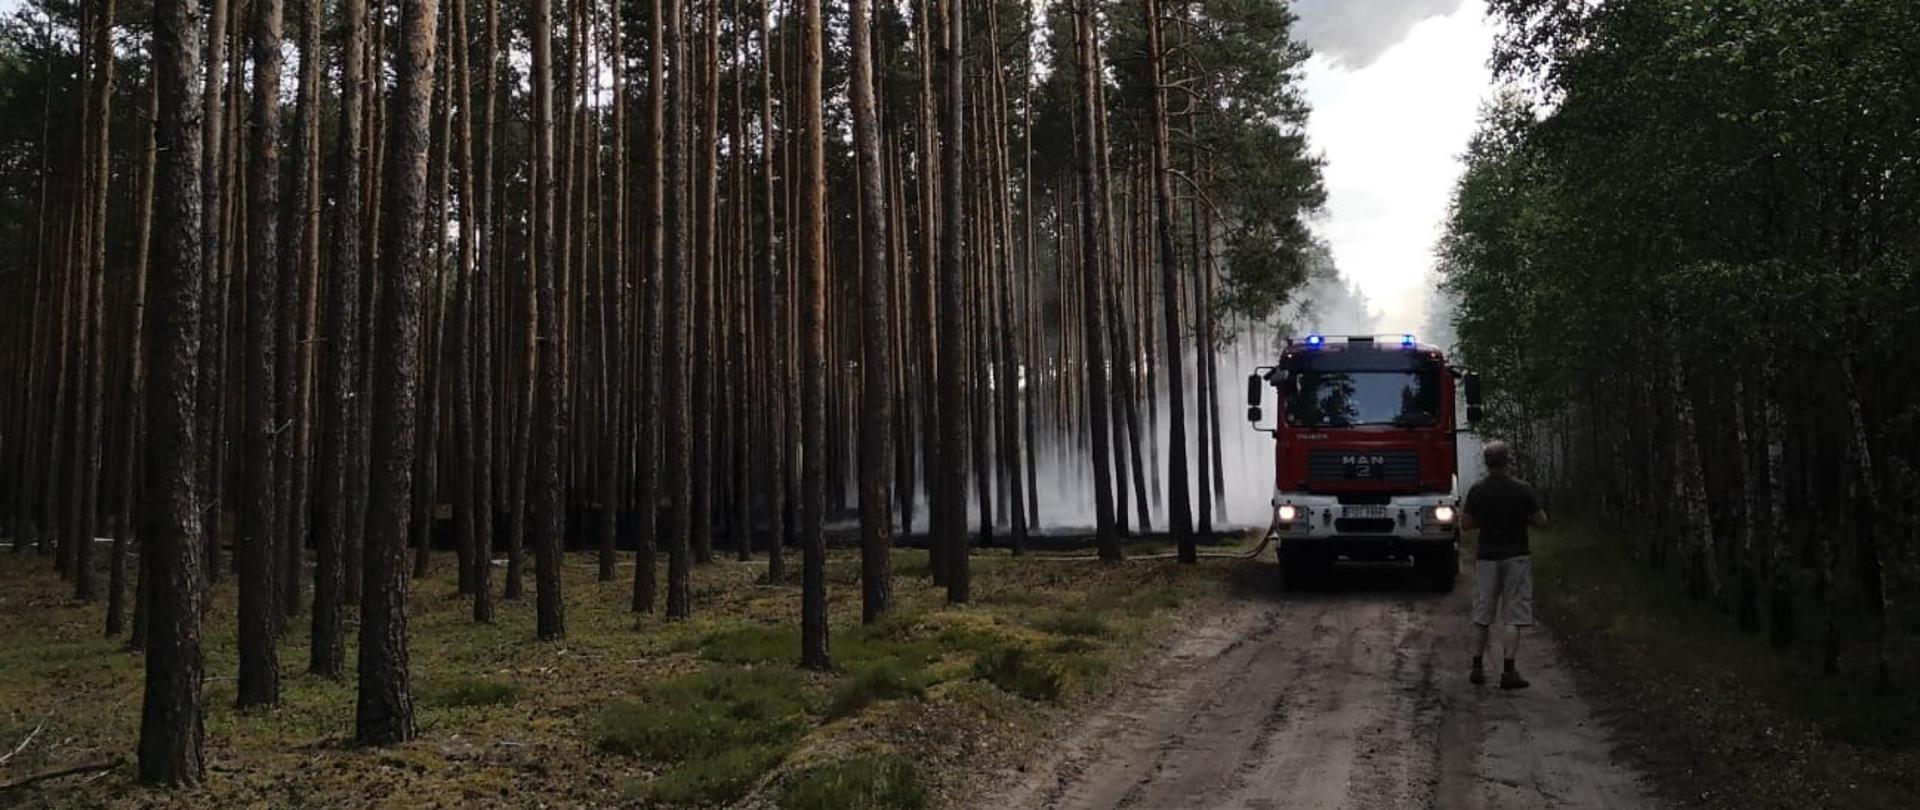 Zdjęcie przedstawia akcję gaśniczą pożaru poszycia leśnego w Bledzianowie- Aniołki. Na zdjęciu widać samochód gaśniczy z którego podawana jest woda w celu ugaszenia pożaru. Nad pojazdem widoczny samolot gaśniczy , który zrzuca wodę na palące się poszycie leśne. Zdjęcie wykonane w porze dziennej na terenie lasu.